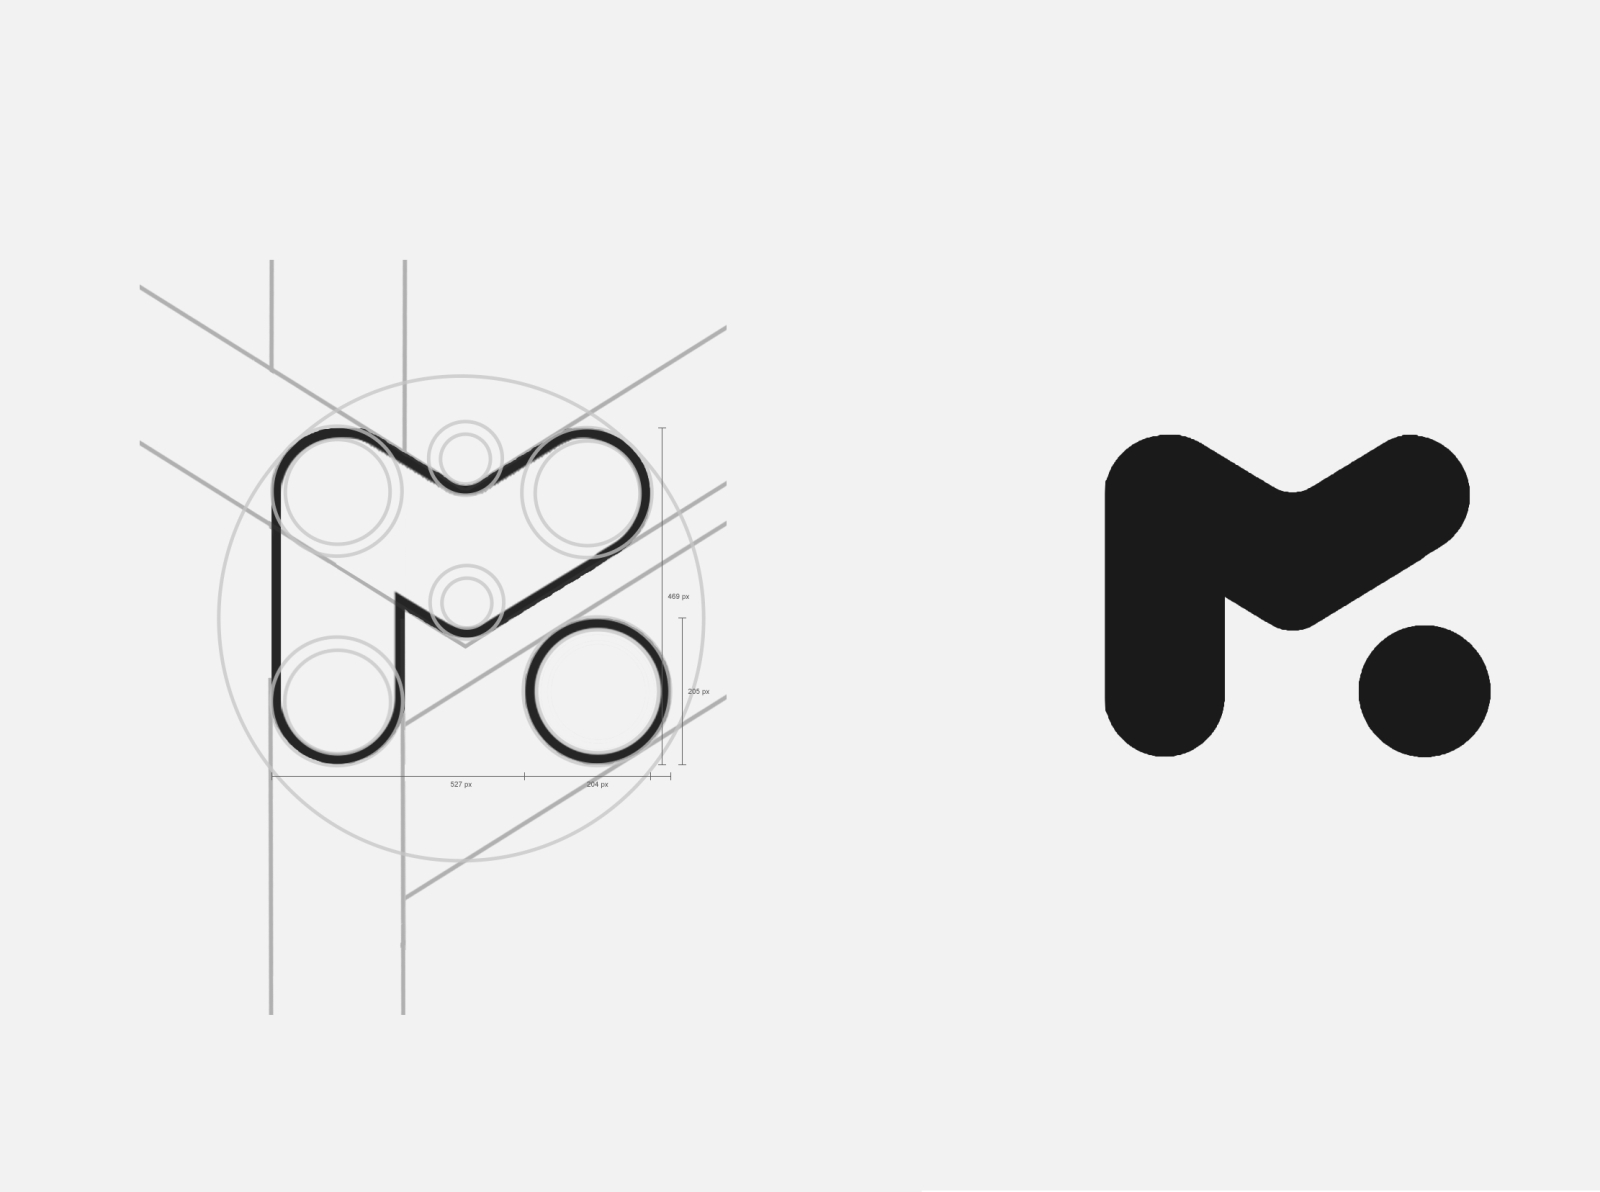 Rebranding Logo | Mobilis by Eddin Houssem on Dribbble